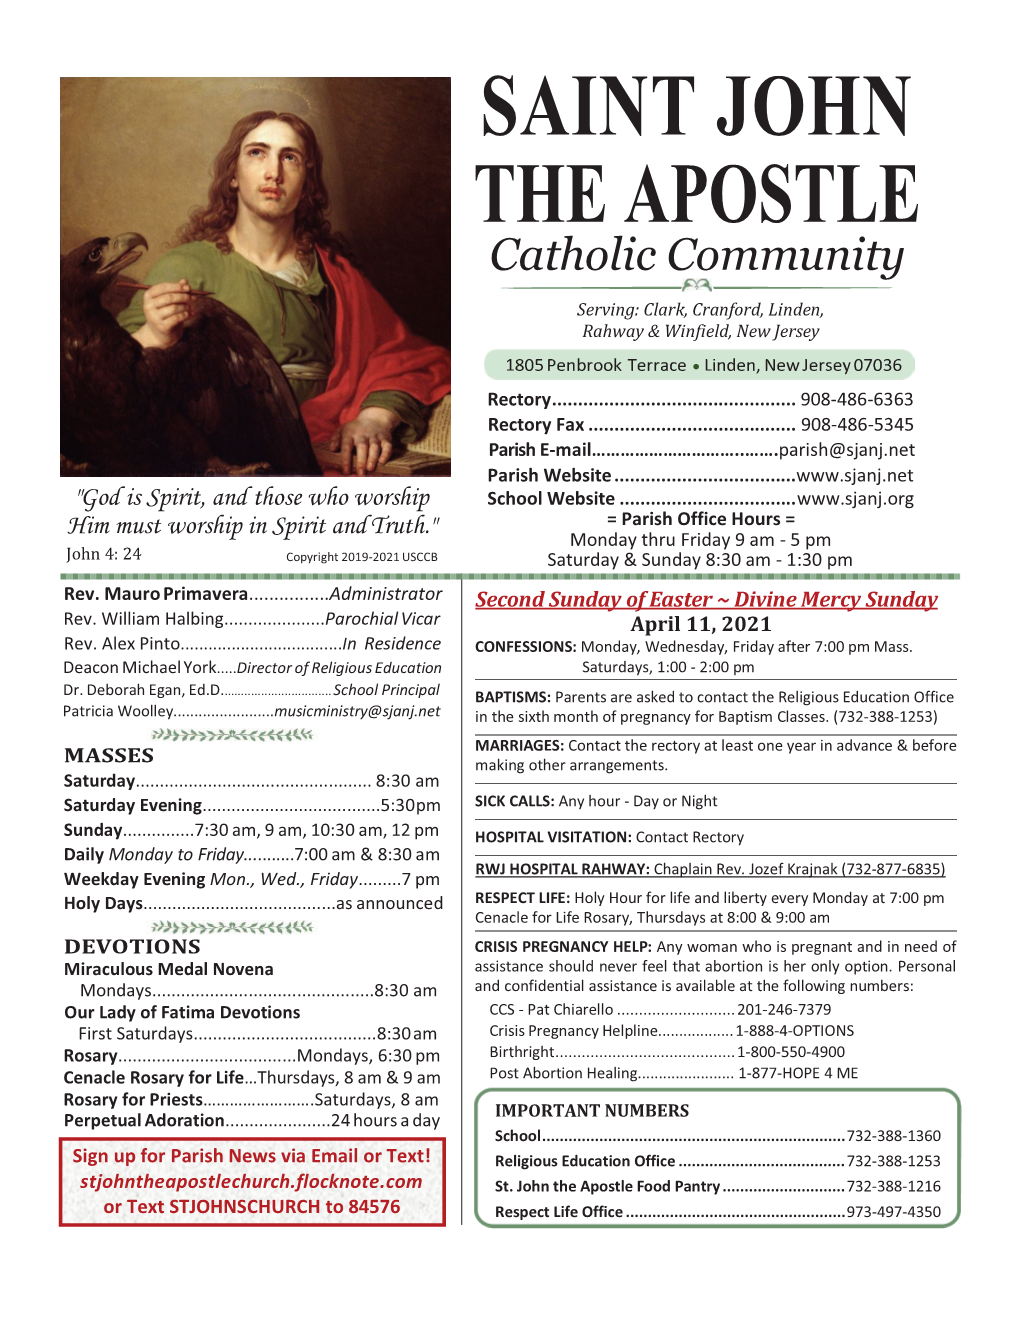 SAINT JOHN the APOSTLE Catholic Community